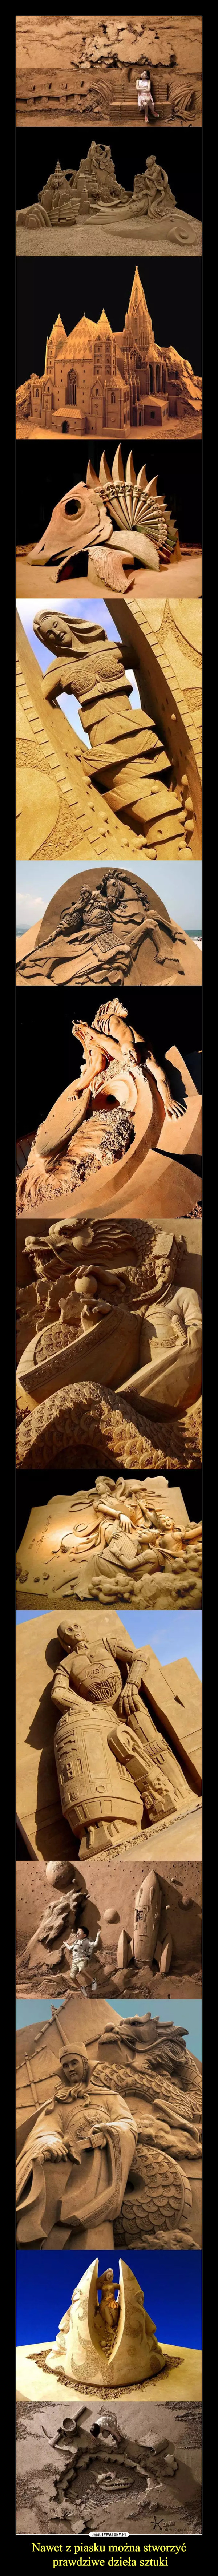 Nawet z piasku można stworzyć prawdziwe dzieła sztuki –  